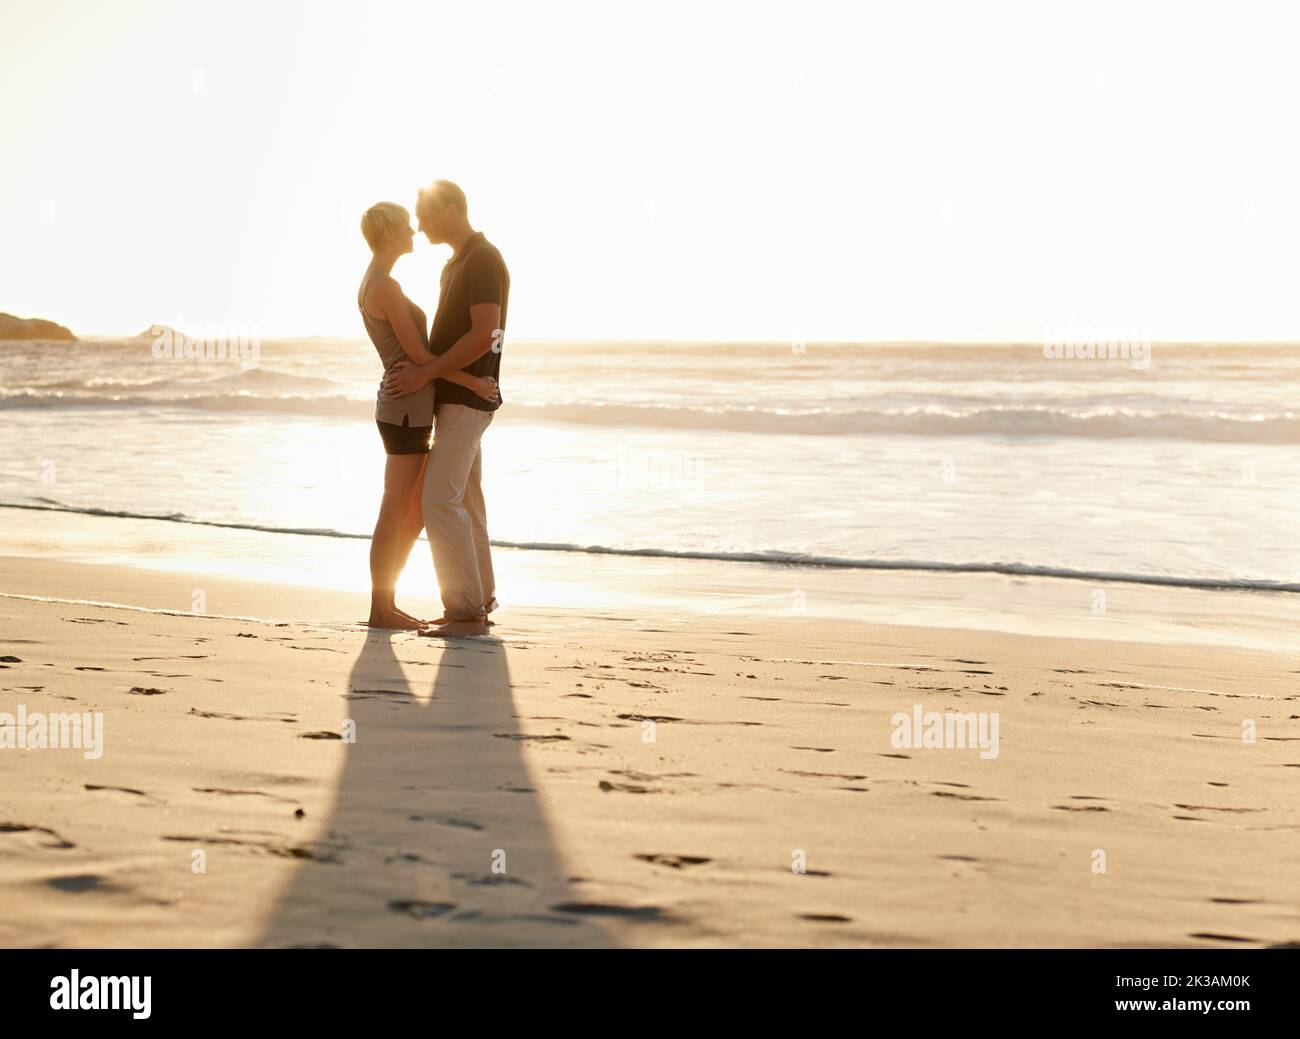 E' una bella giornata da innamorarsi, una coppia matura che si gode una giornata in spiaggia. Foto Stock